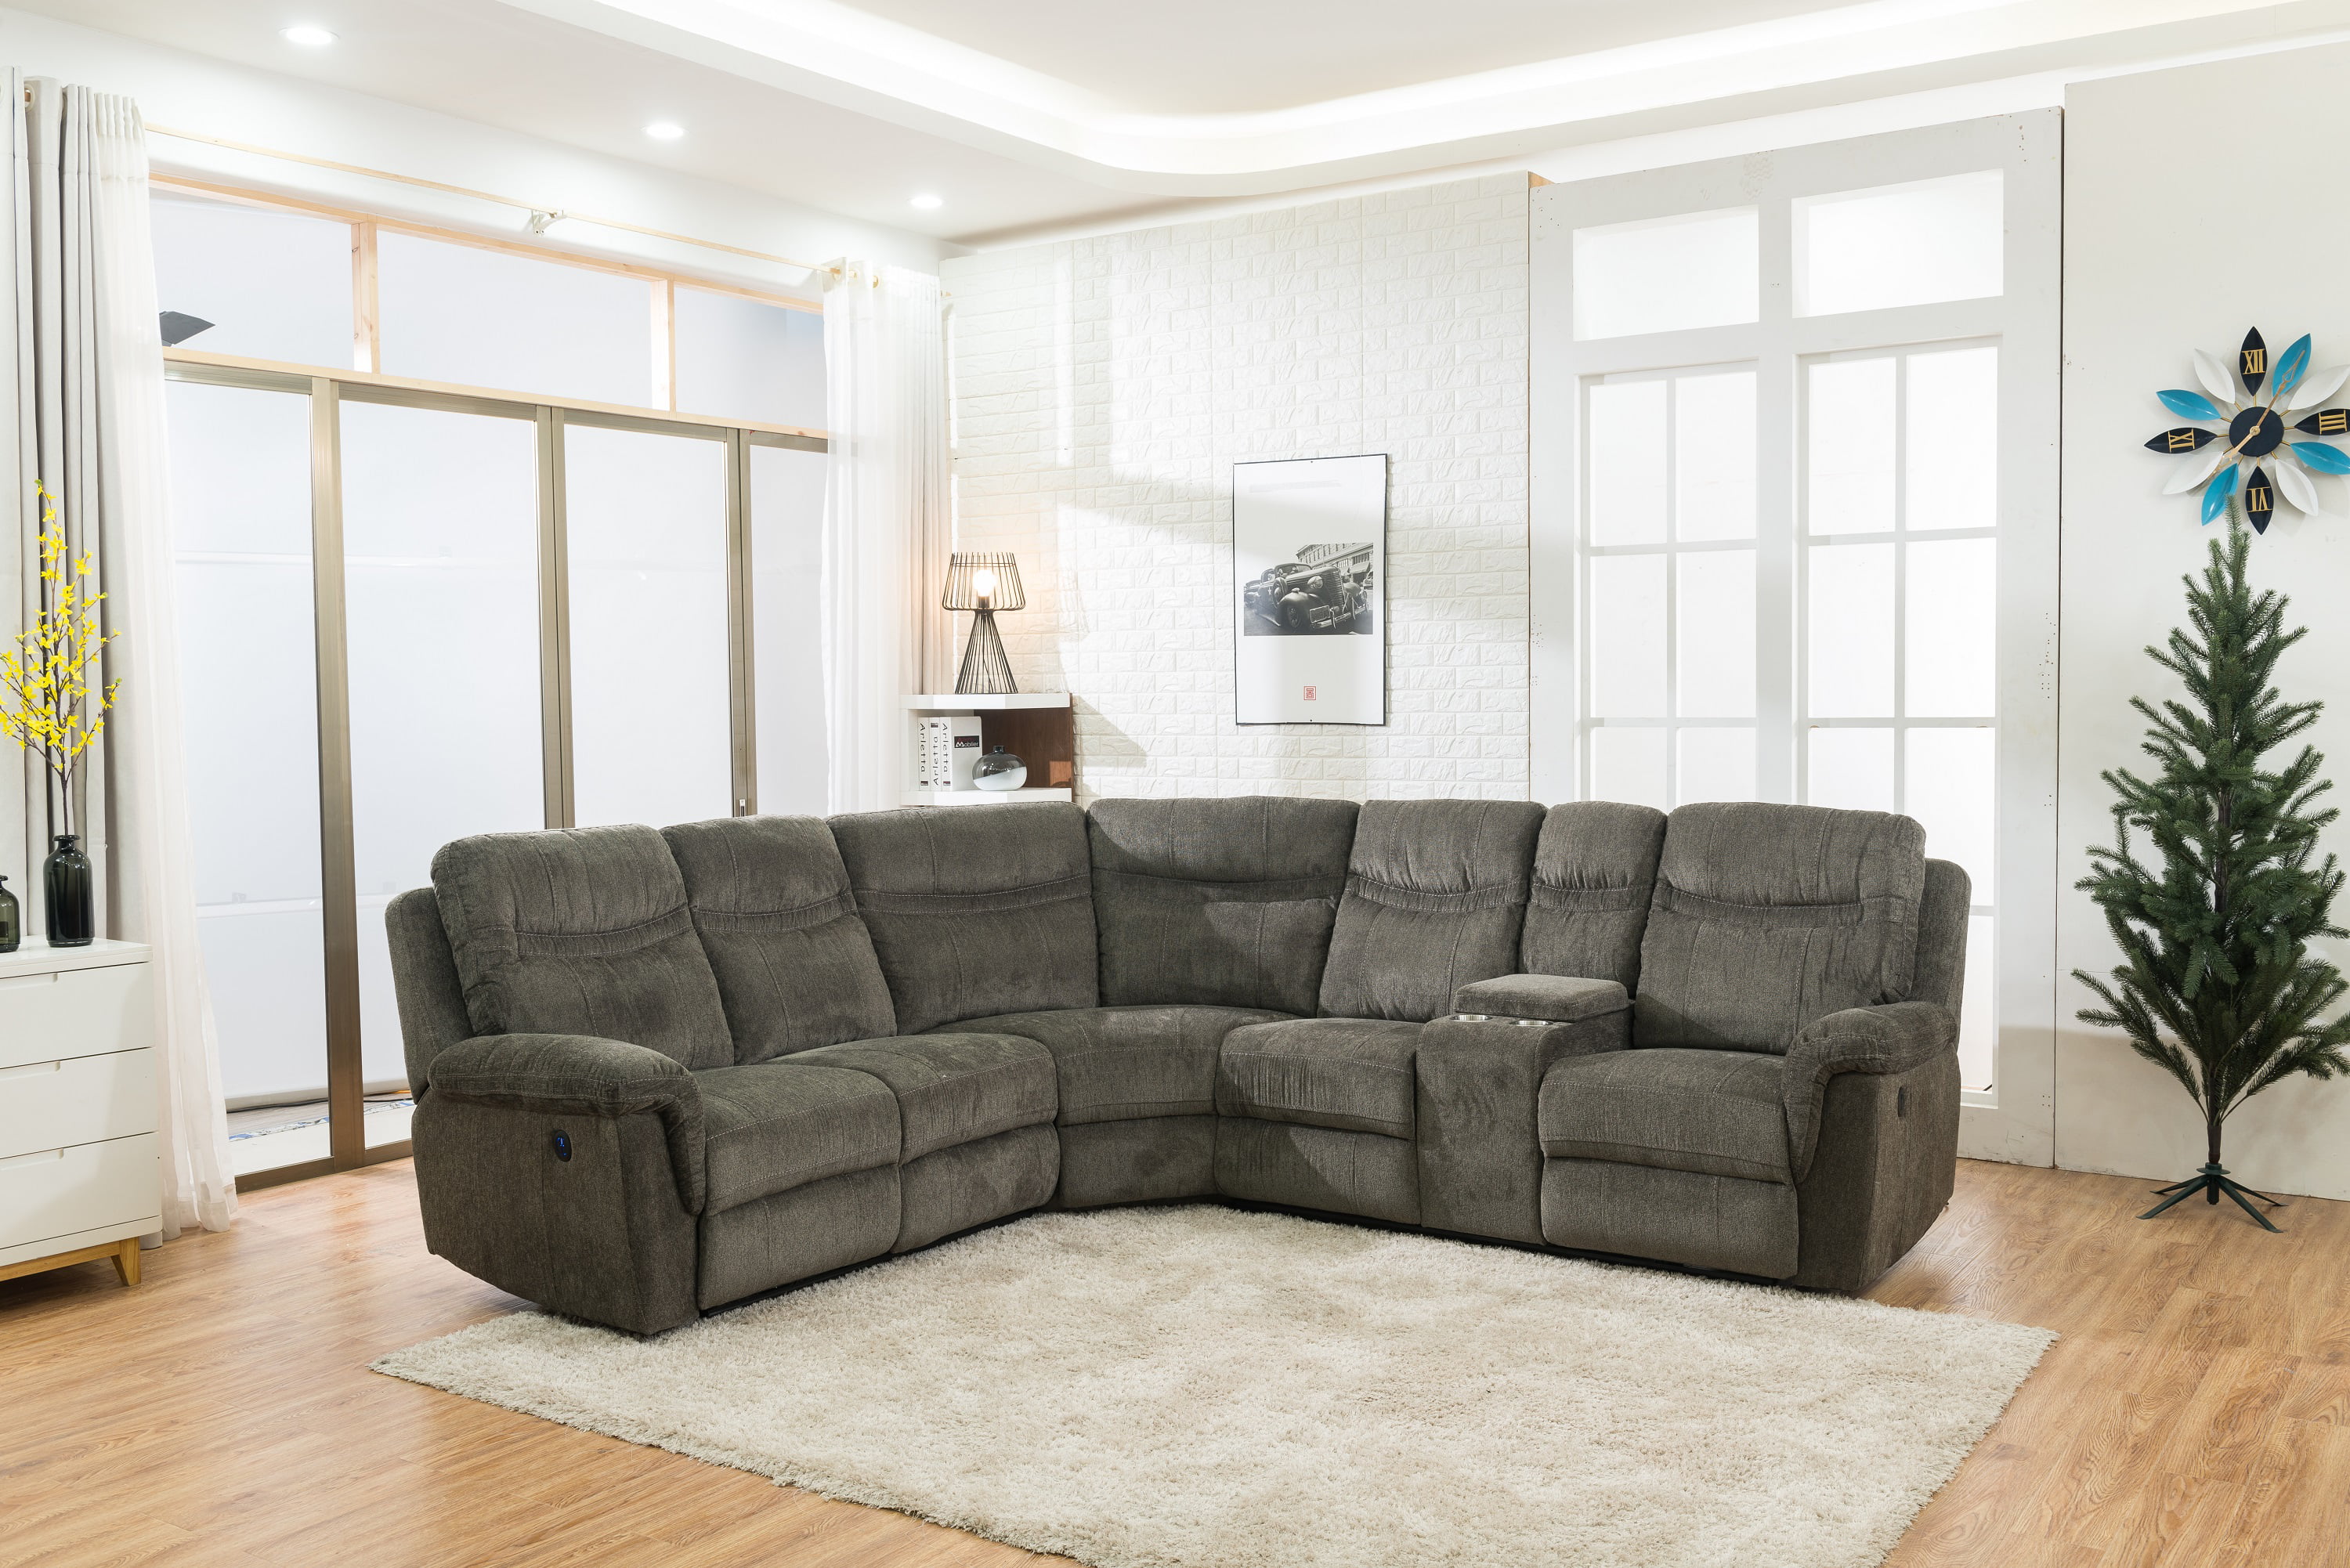 Living Room Setup For Reclining Sofa